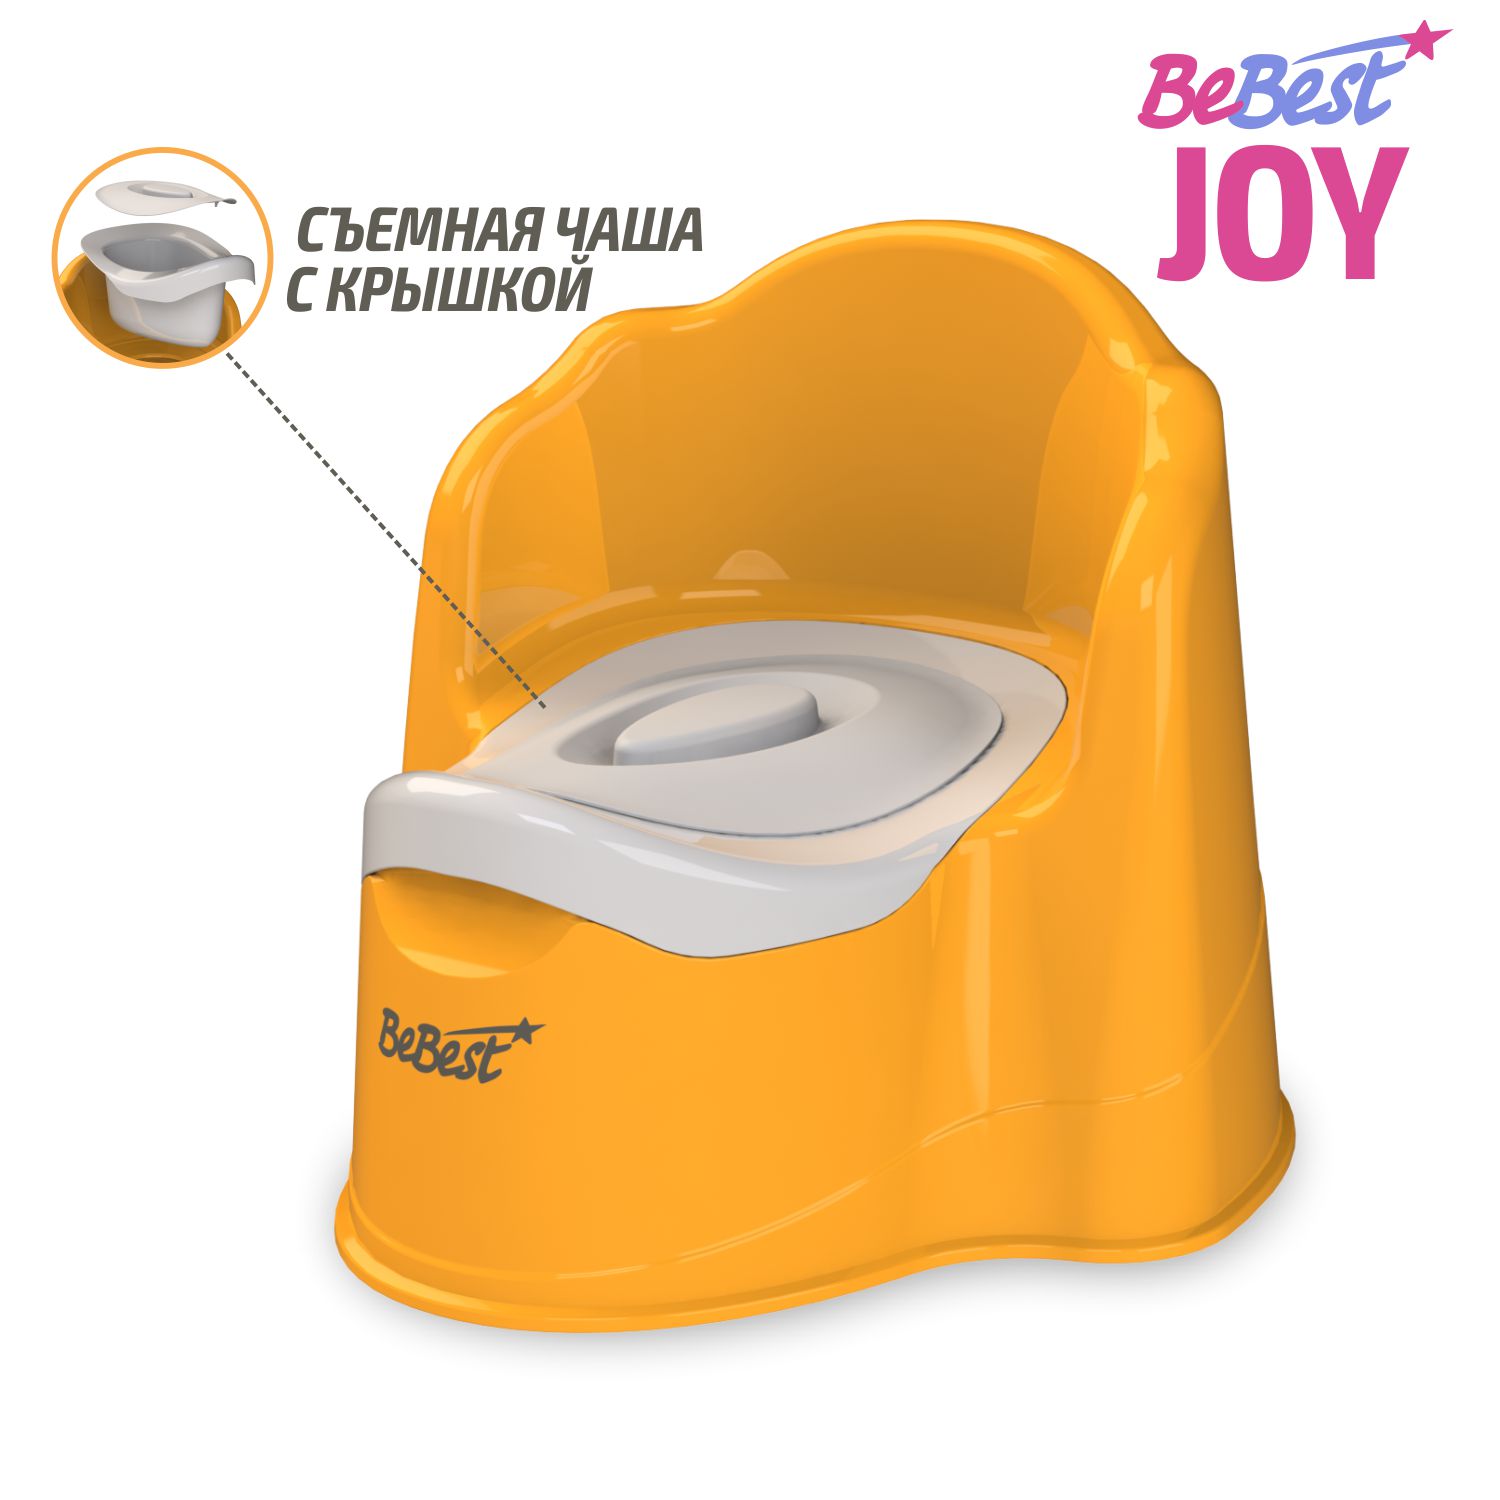 Горшок детский BeBest Joy, оранжевый с серой крышкой ролик массажный высокая жесткость 33x13 5 cм star fit pro fa 509 оранжевый